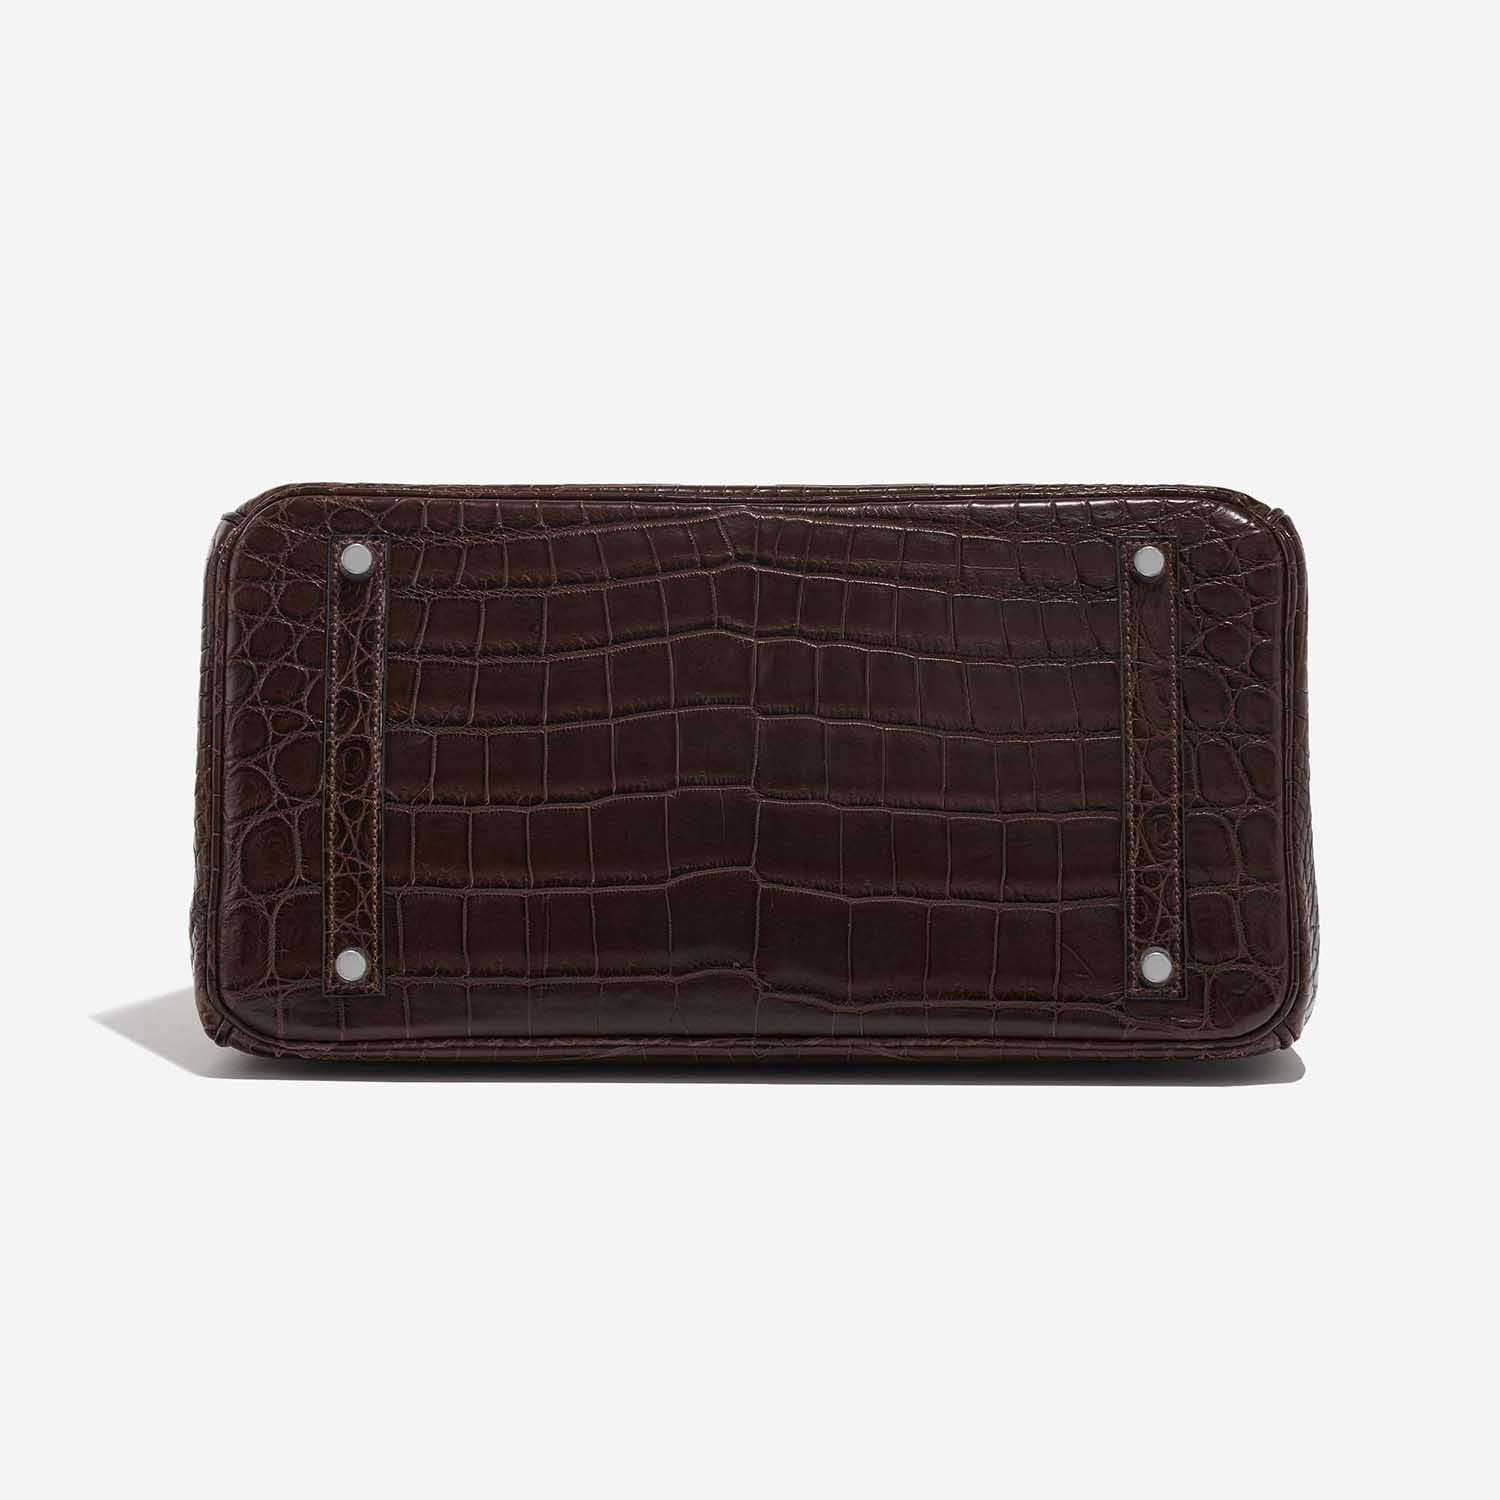 Pre-owned Hermès Tasche Birkin 35 Crocodile Niloticus Marron Brown Bottom | Verkaufen Sie Ihre Designer-Tasche auf Saclab.com